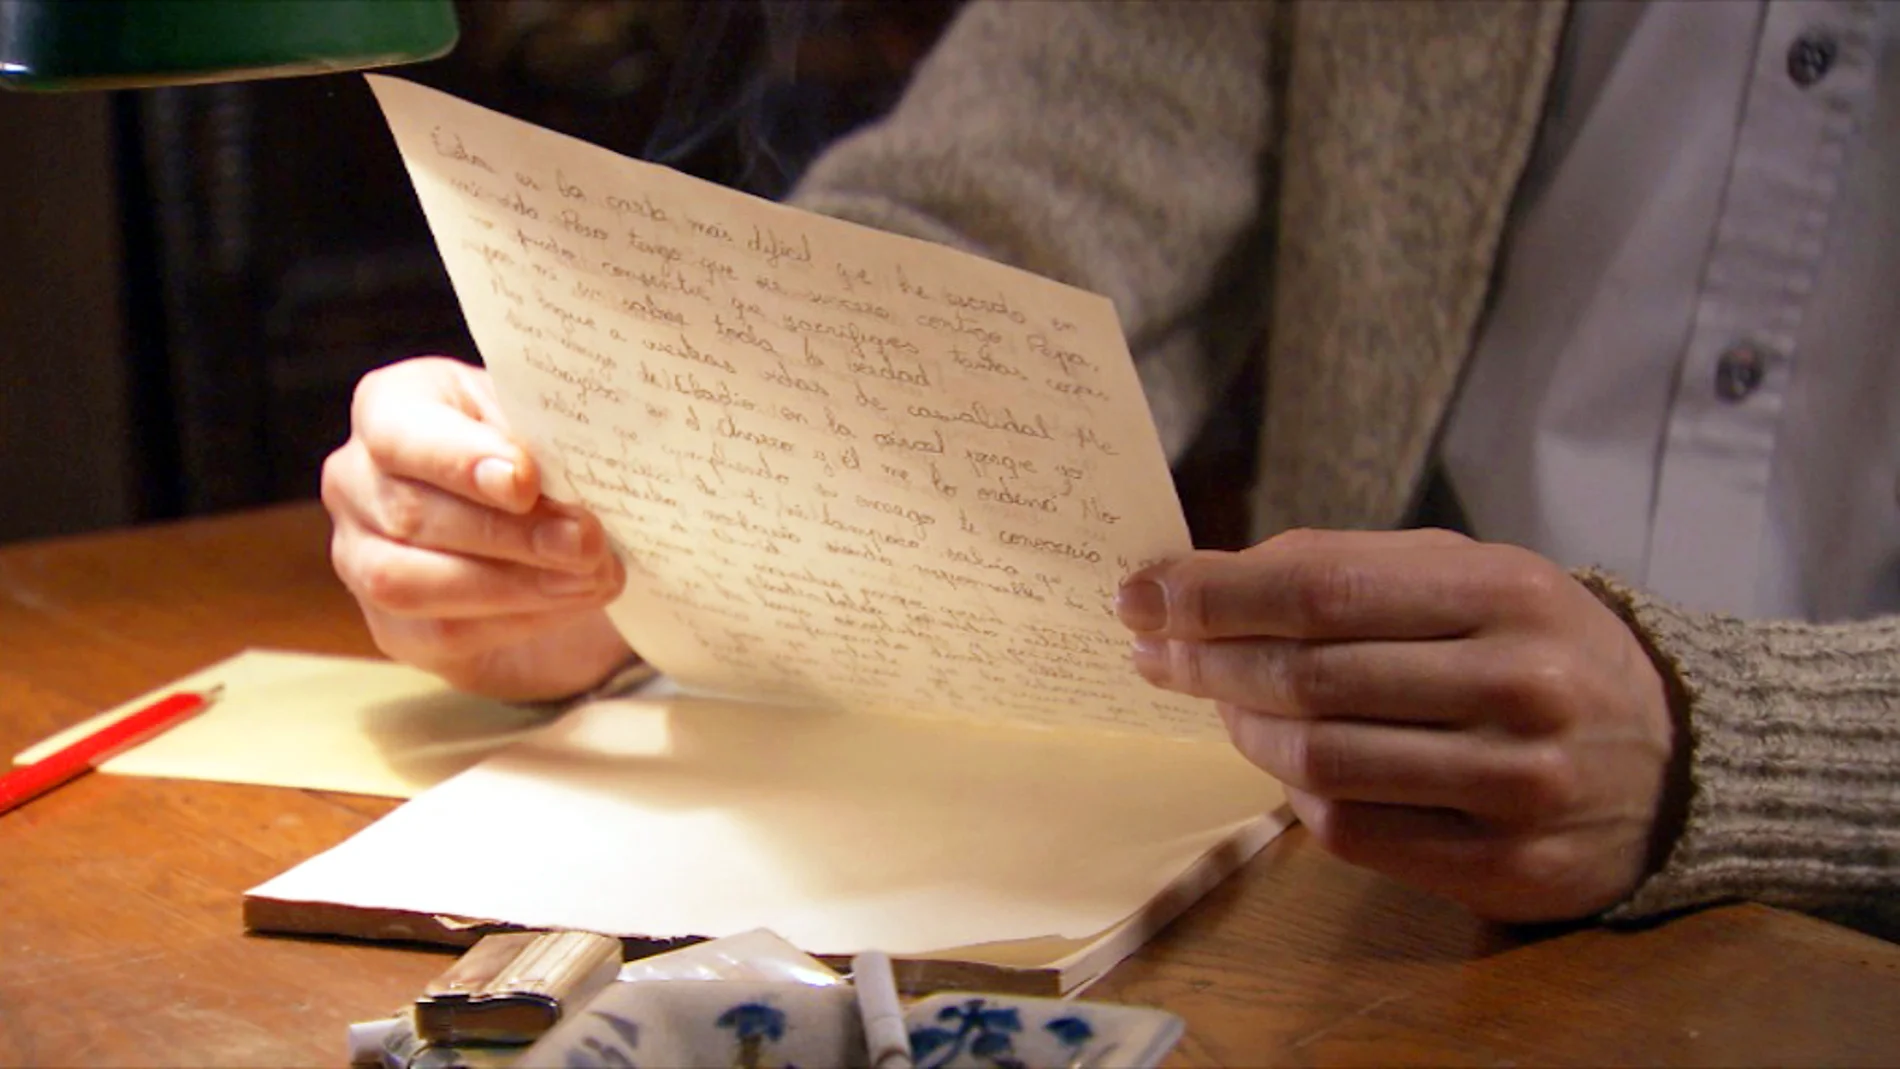 Toni escribe una carta a Pepa